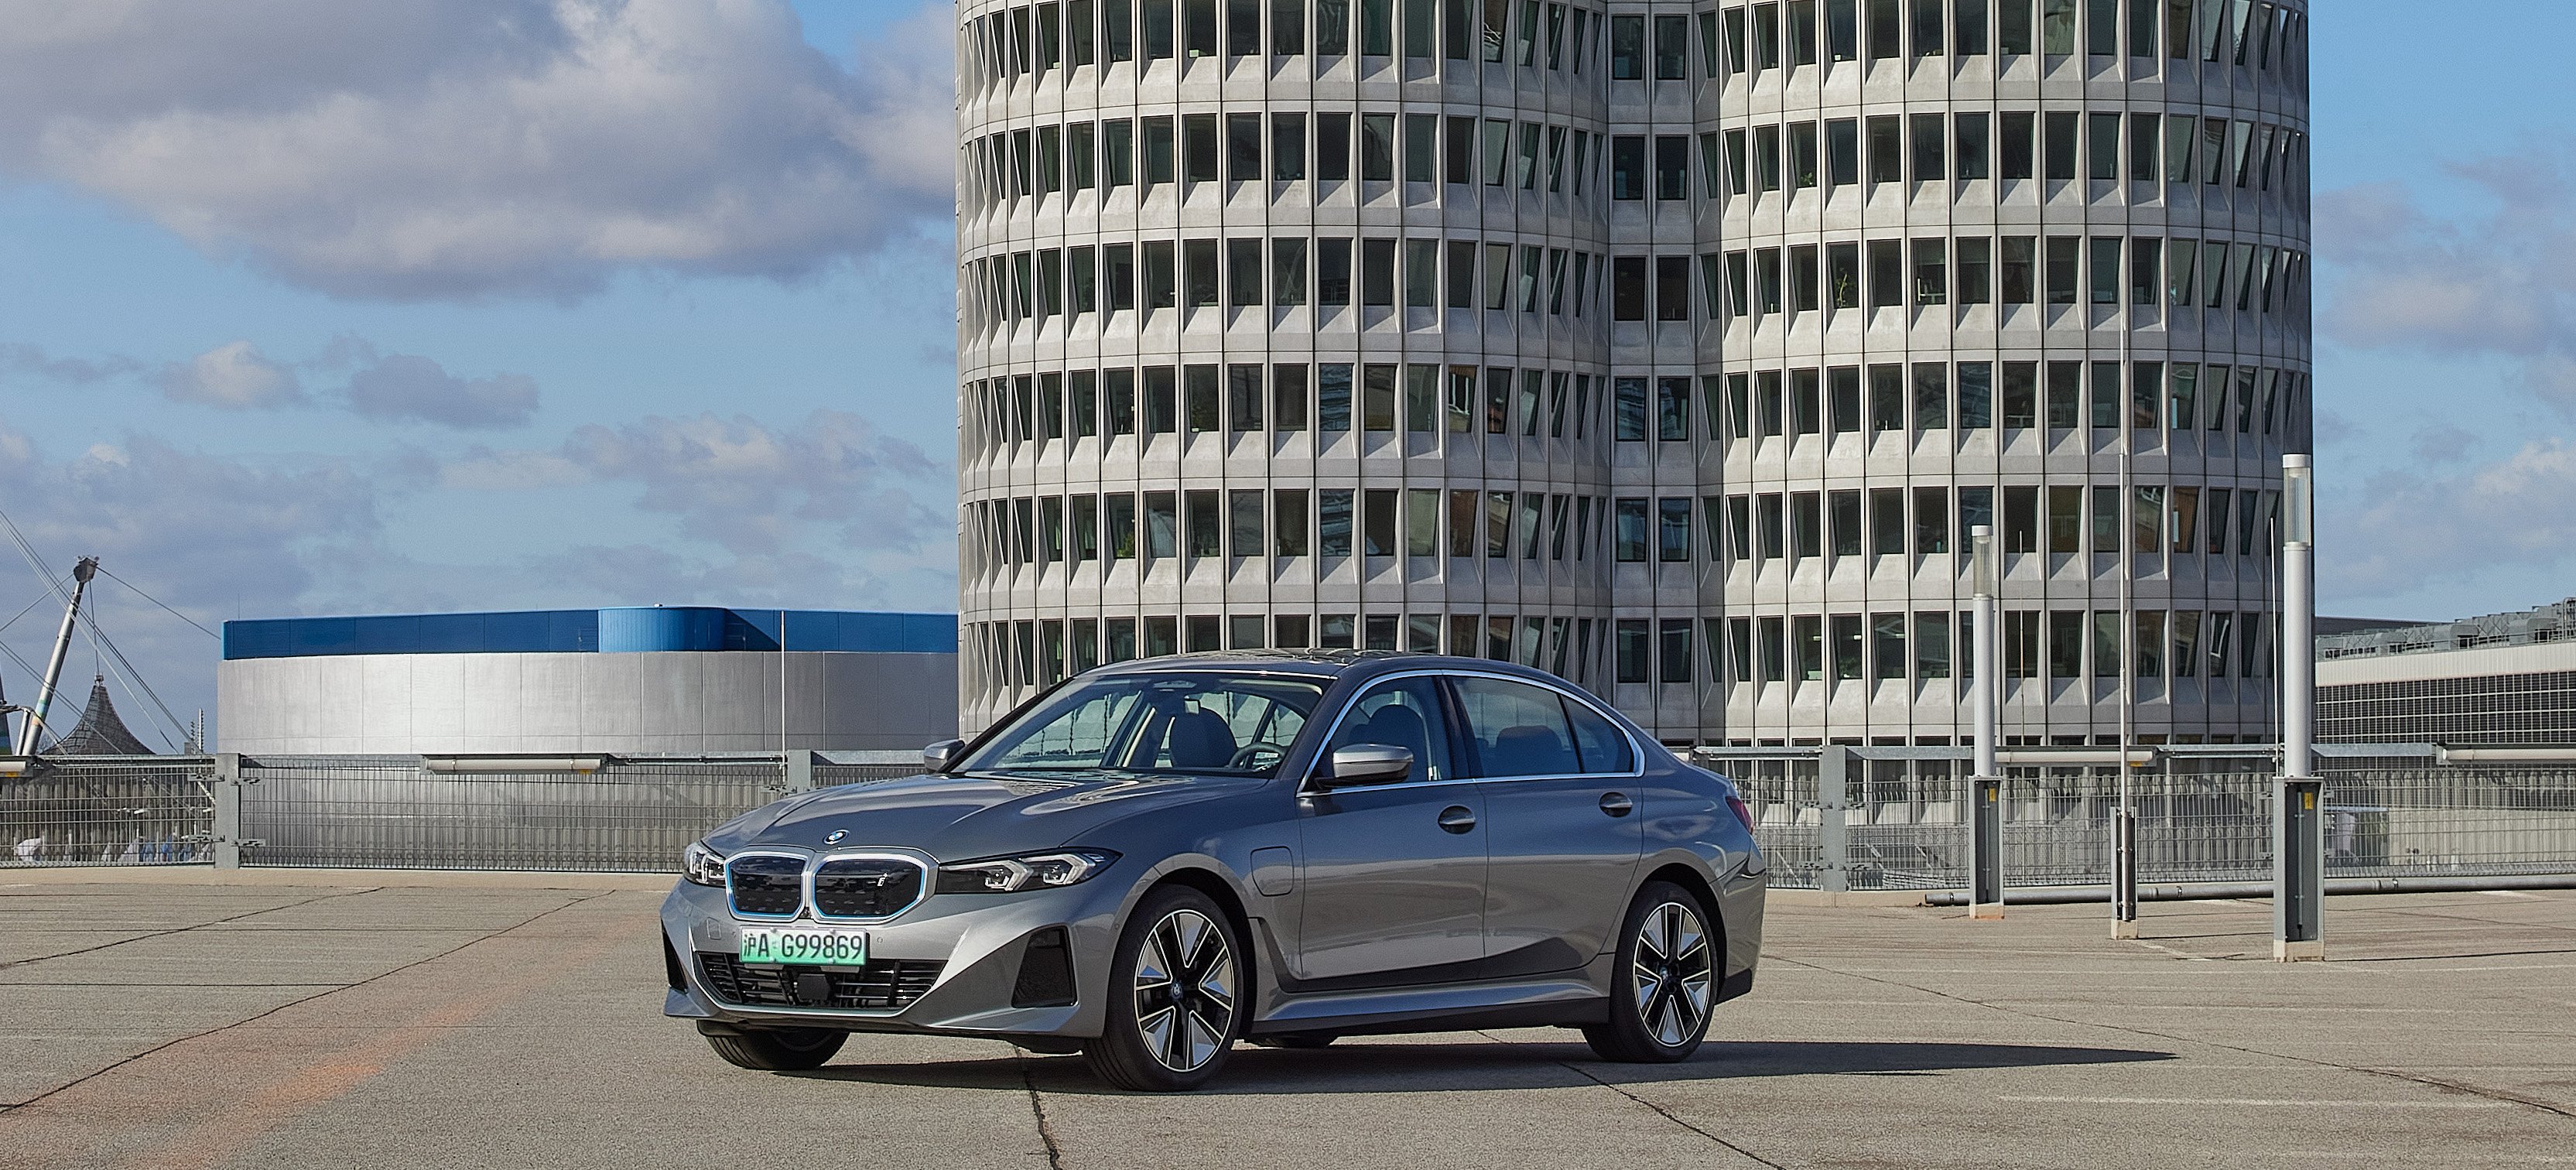 Günstiges E-Auto: Diesen Fehler vom i3 wiederholt BMW nicht